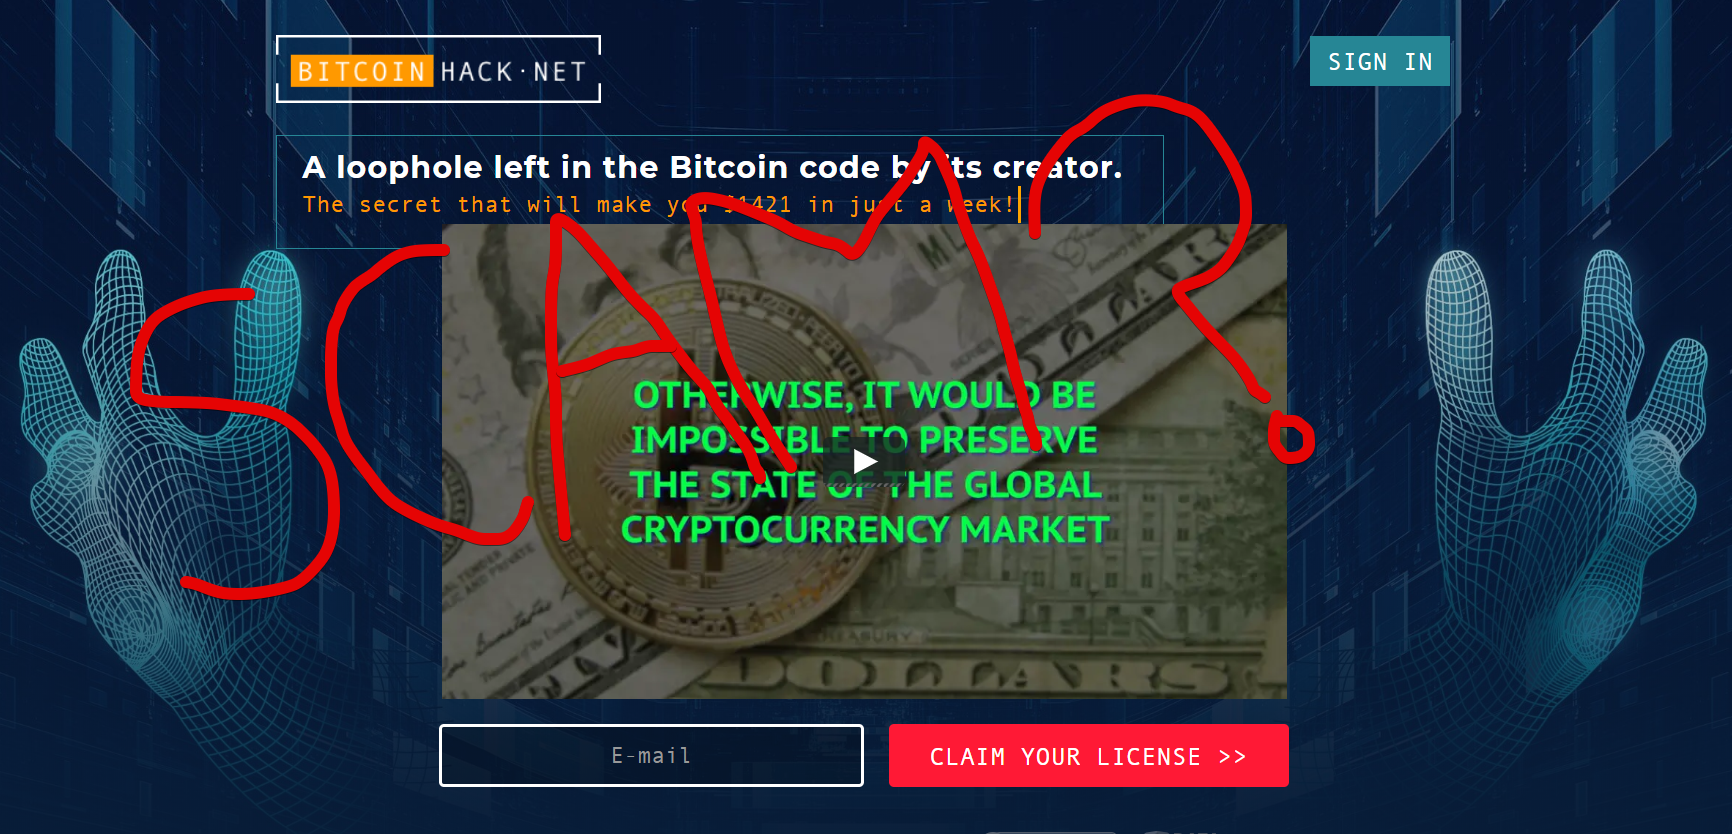 Bitcoin Hack Net Scam